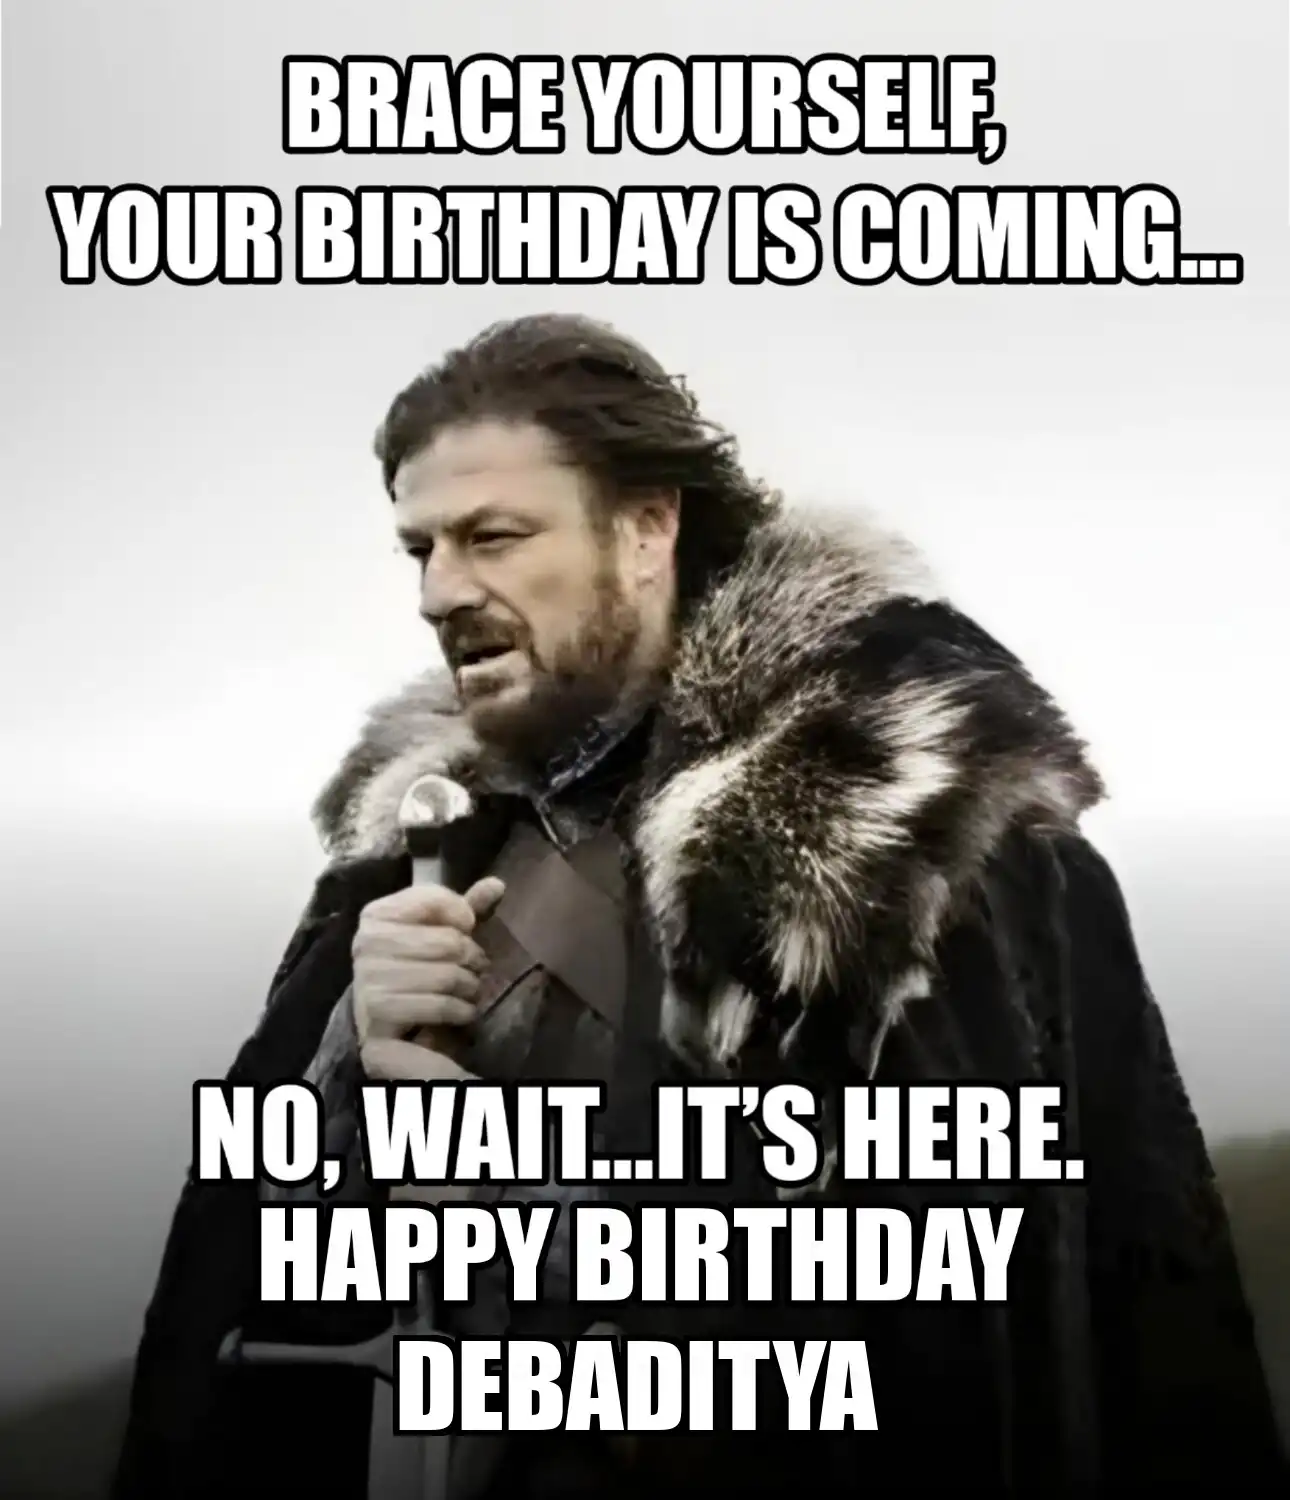 Happy Birthday Debaditya Brace Yourself Your Birthday Is Coming Meme